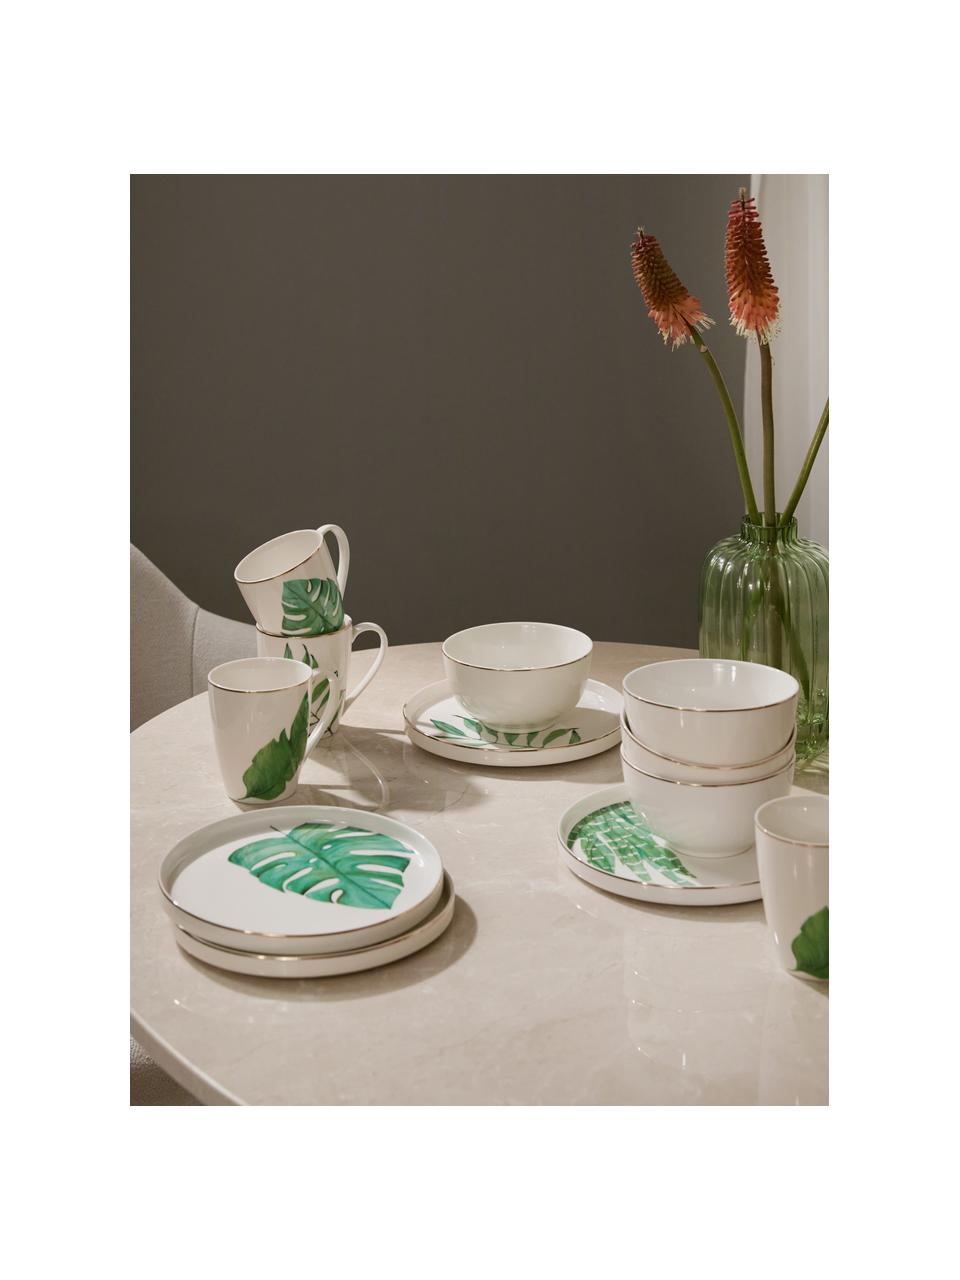 Súprava riadu s tropickým dizajnom Timba, 4 osoby (12 dielov), Fine Bone China (porcelán)
Mäkký porcelán, ktorý sa vyznačuje predovšetkým žiarivým, priehľadným leskom, Biela, zelená, odtiene zlatej, Súprava s rôznymi veľkosťami